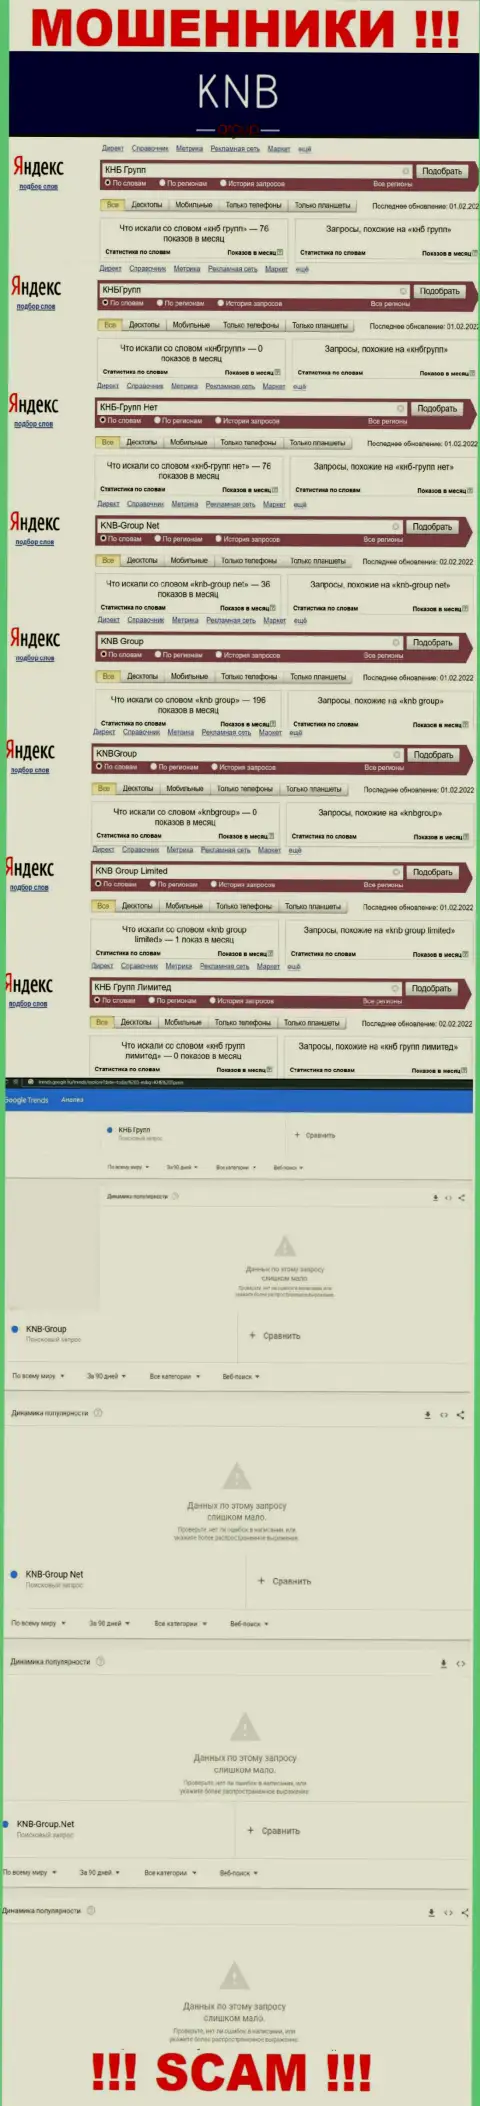 Скриншот статистических сведений online запросов по жульнической организации КНБ Групп